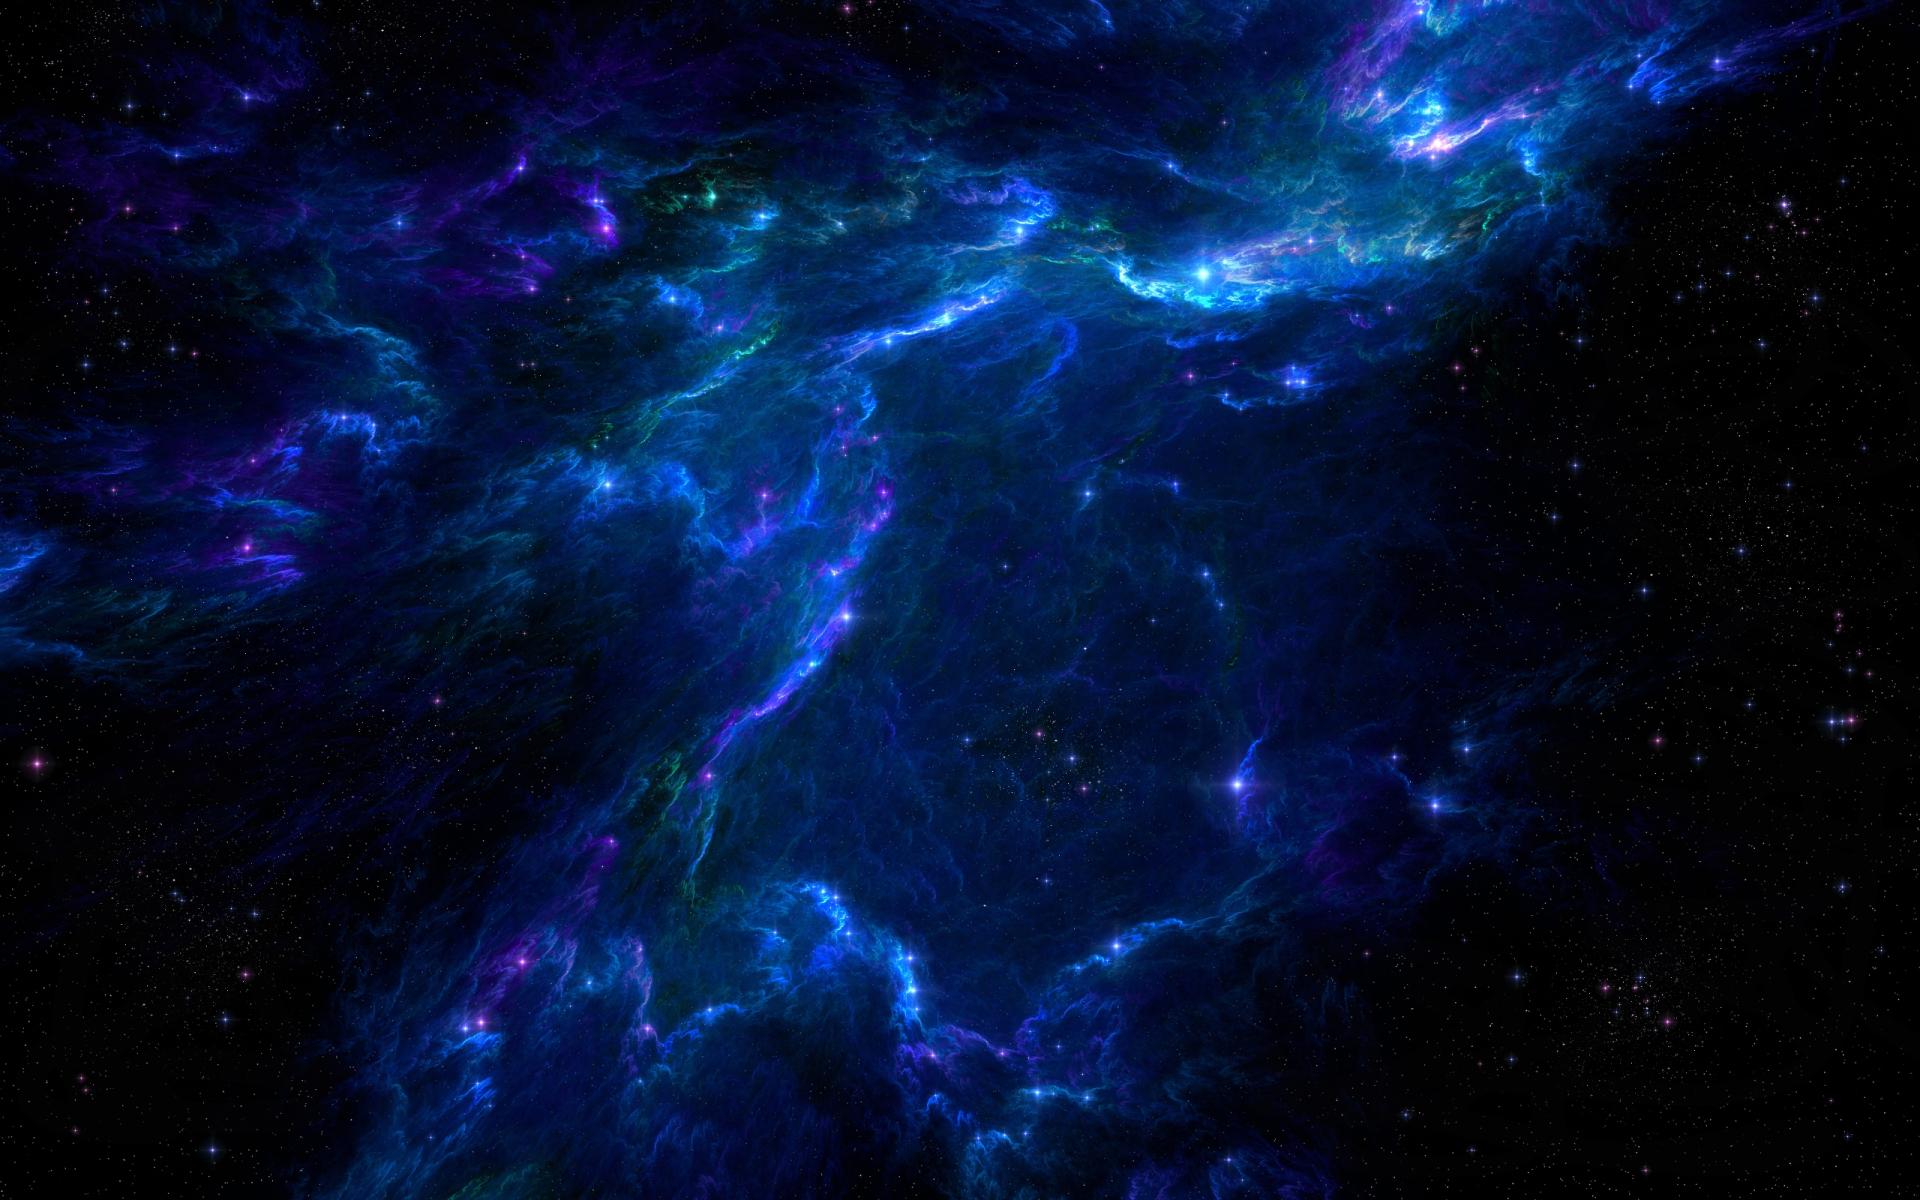 Nebula Sci Fi at 1600 x 1200 size wallpapers HD quality